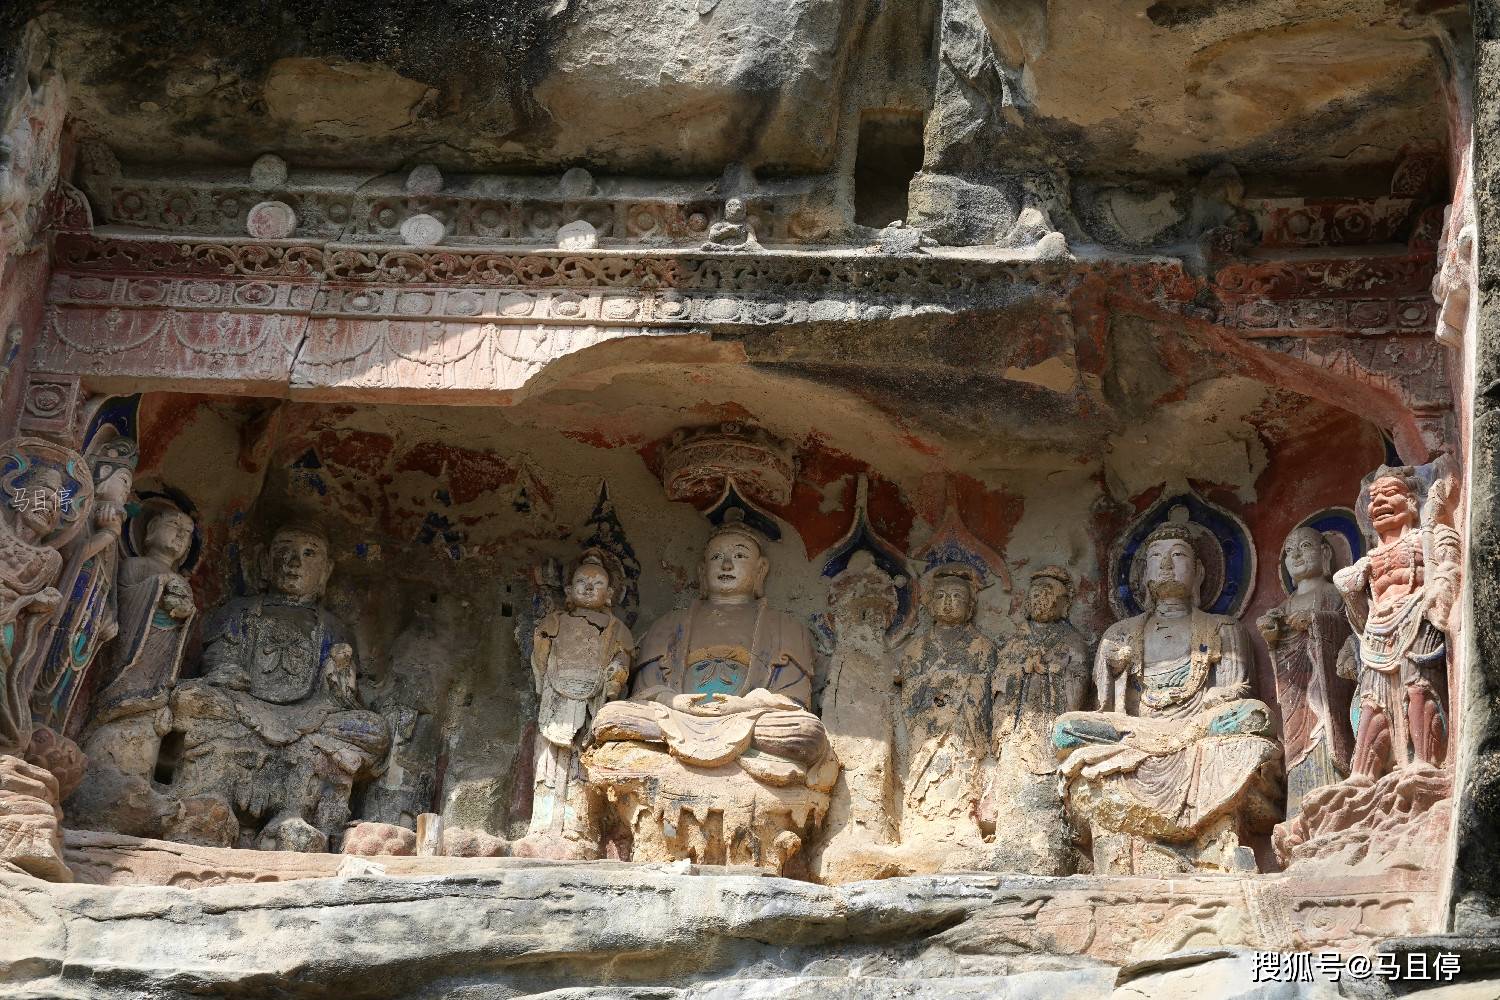 探访中国石窟之乡:到处都是石窟造像,还可看到世界上少见的双头佛